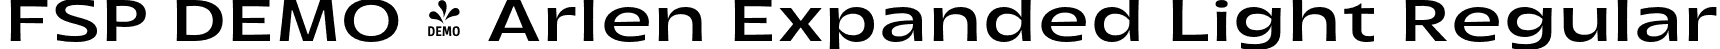 FSP DEMO - Arlen Expanded Light Regular font - Fontspring-DEMO-arlen-expandedlight.otf